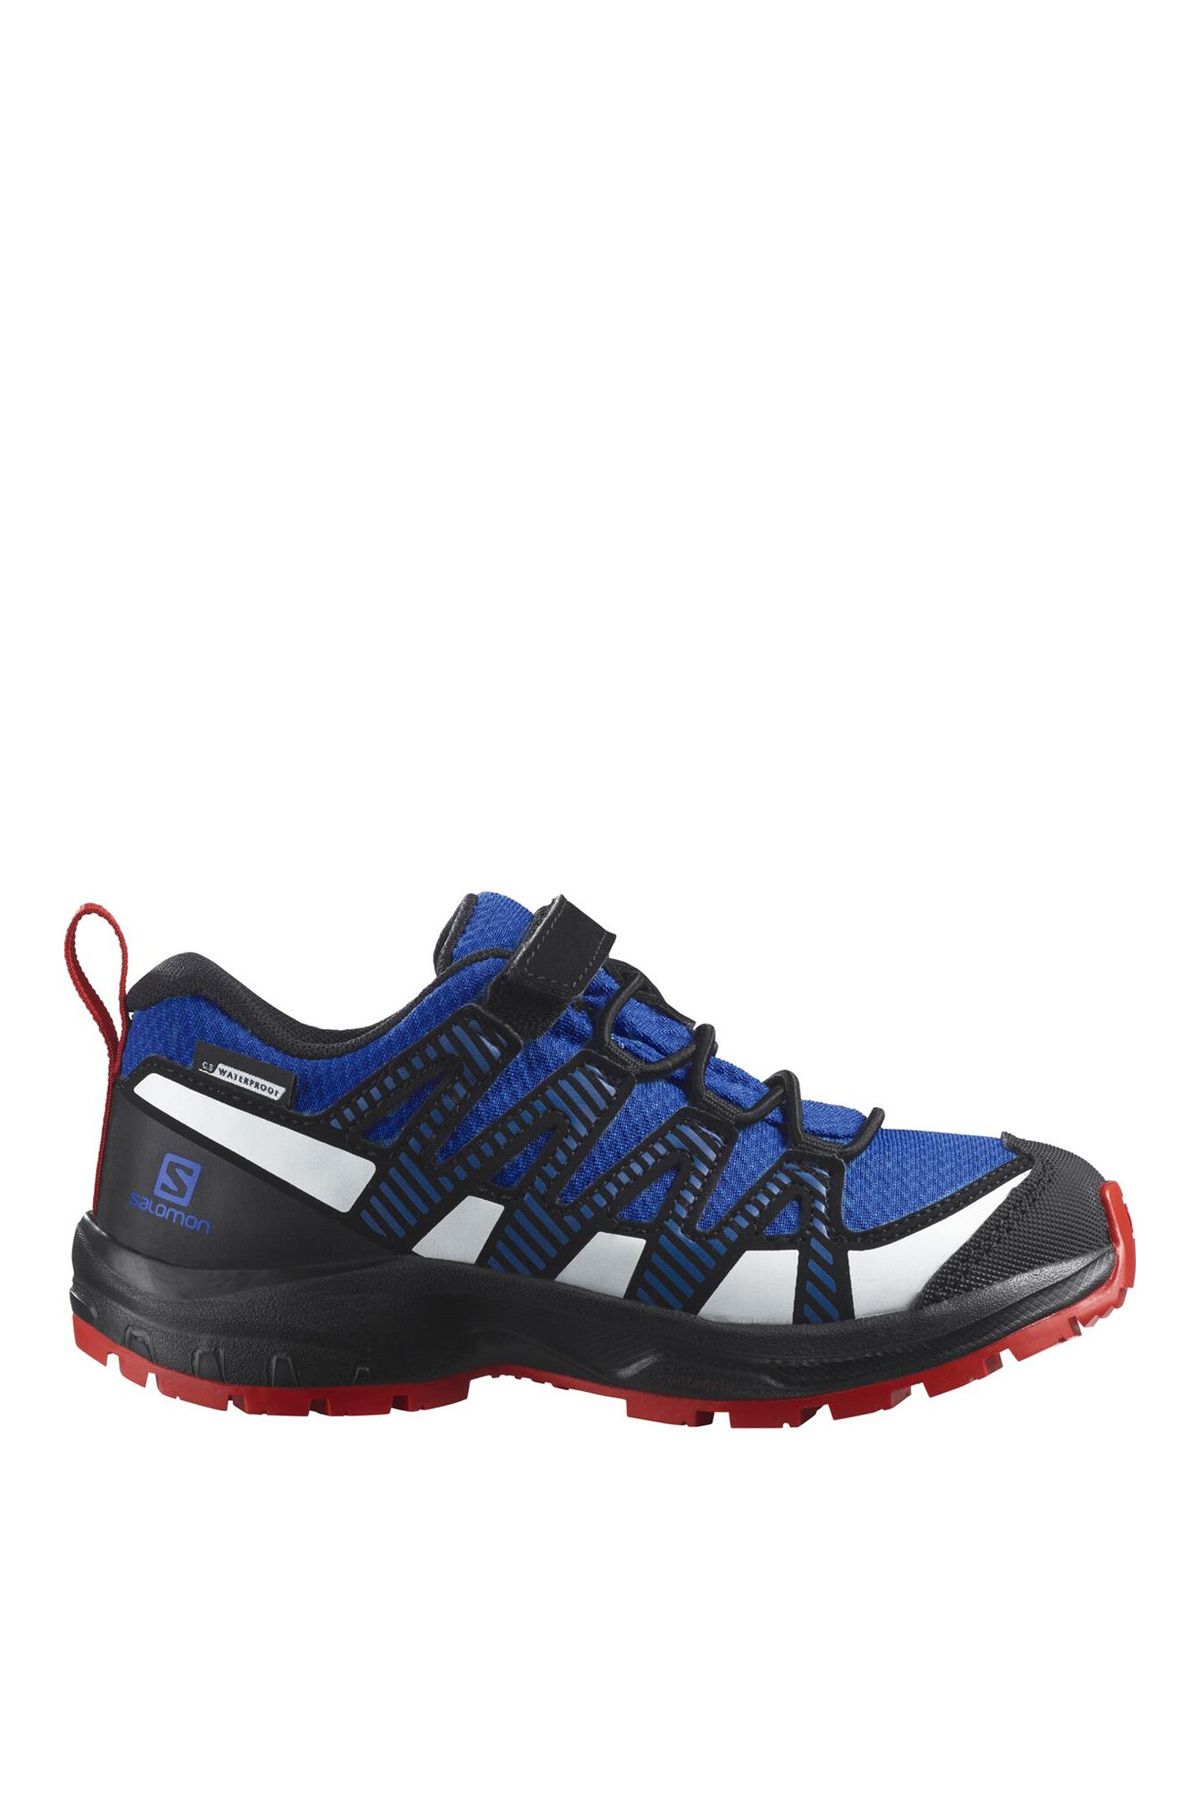 Salomon Lacivert - Siyah Erkek Çocuk Outdoor Ayakkabısı L47126300 XA PRO V8 CSWP K